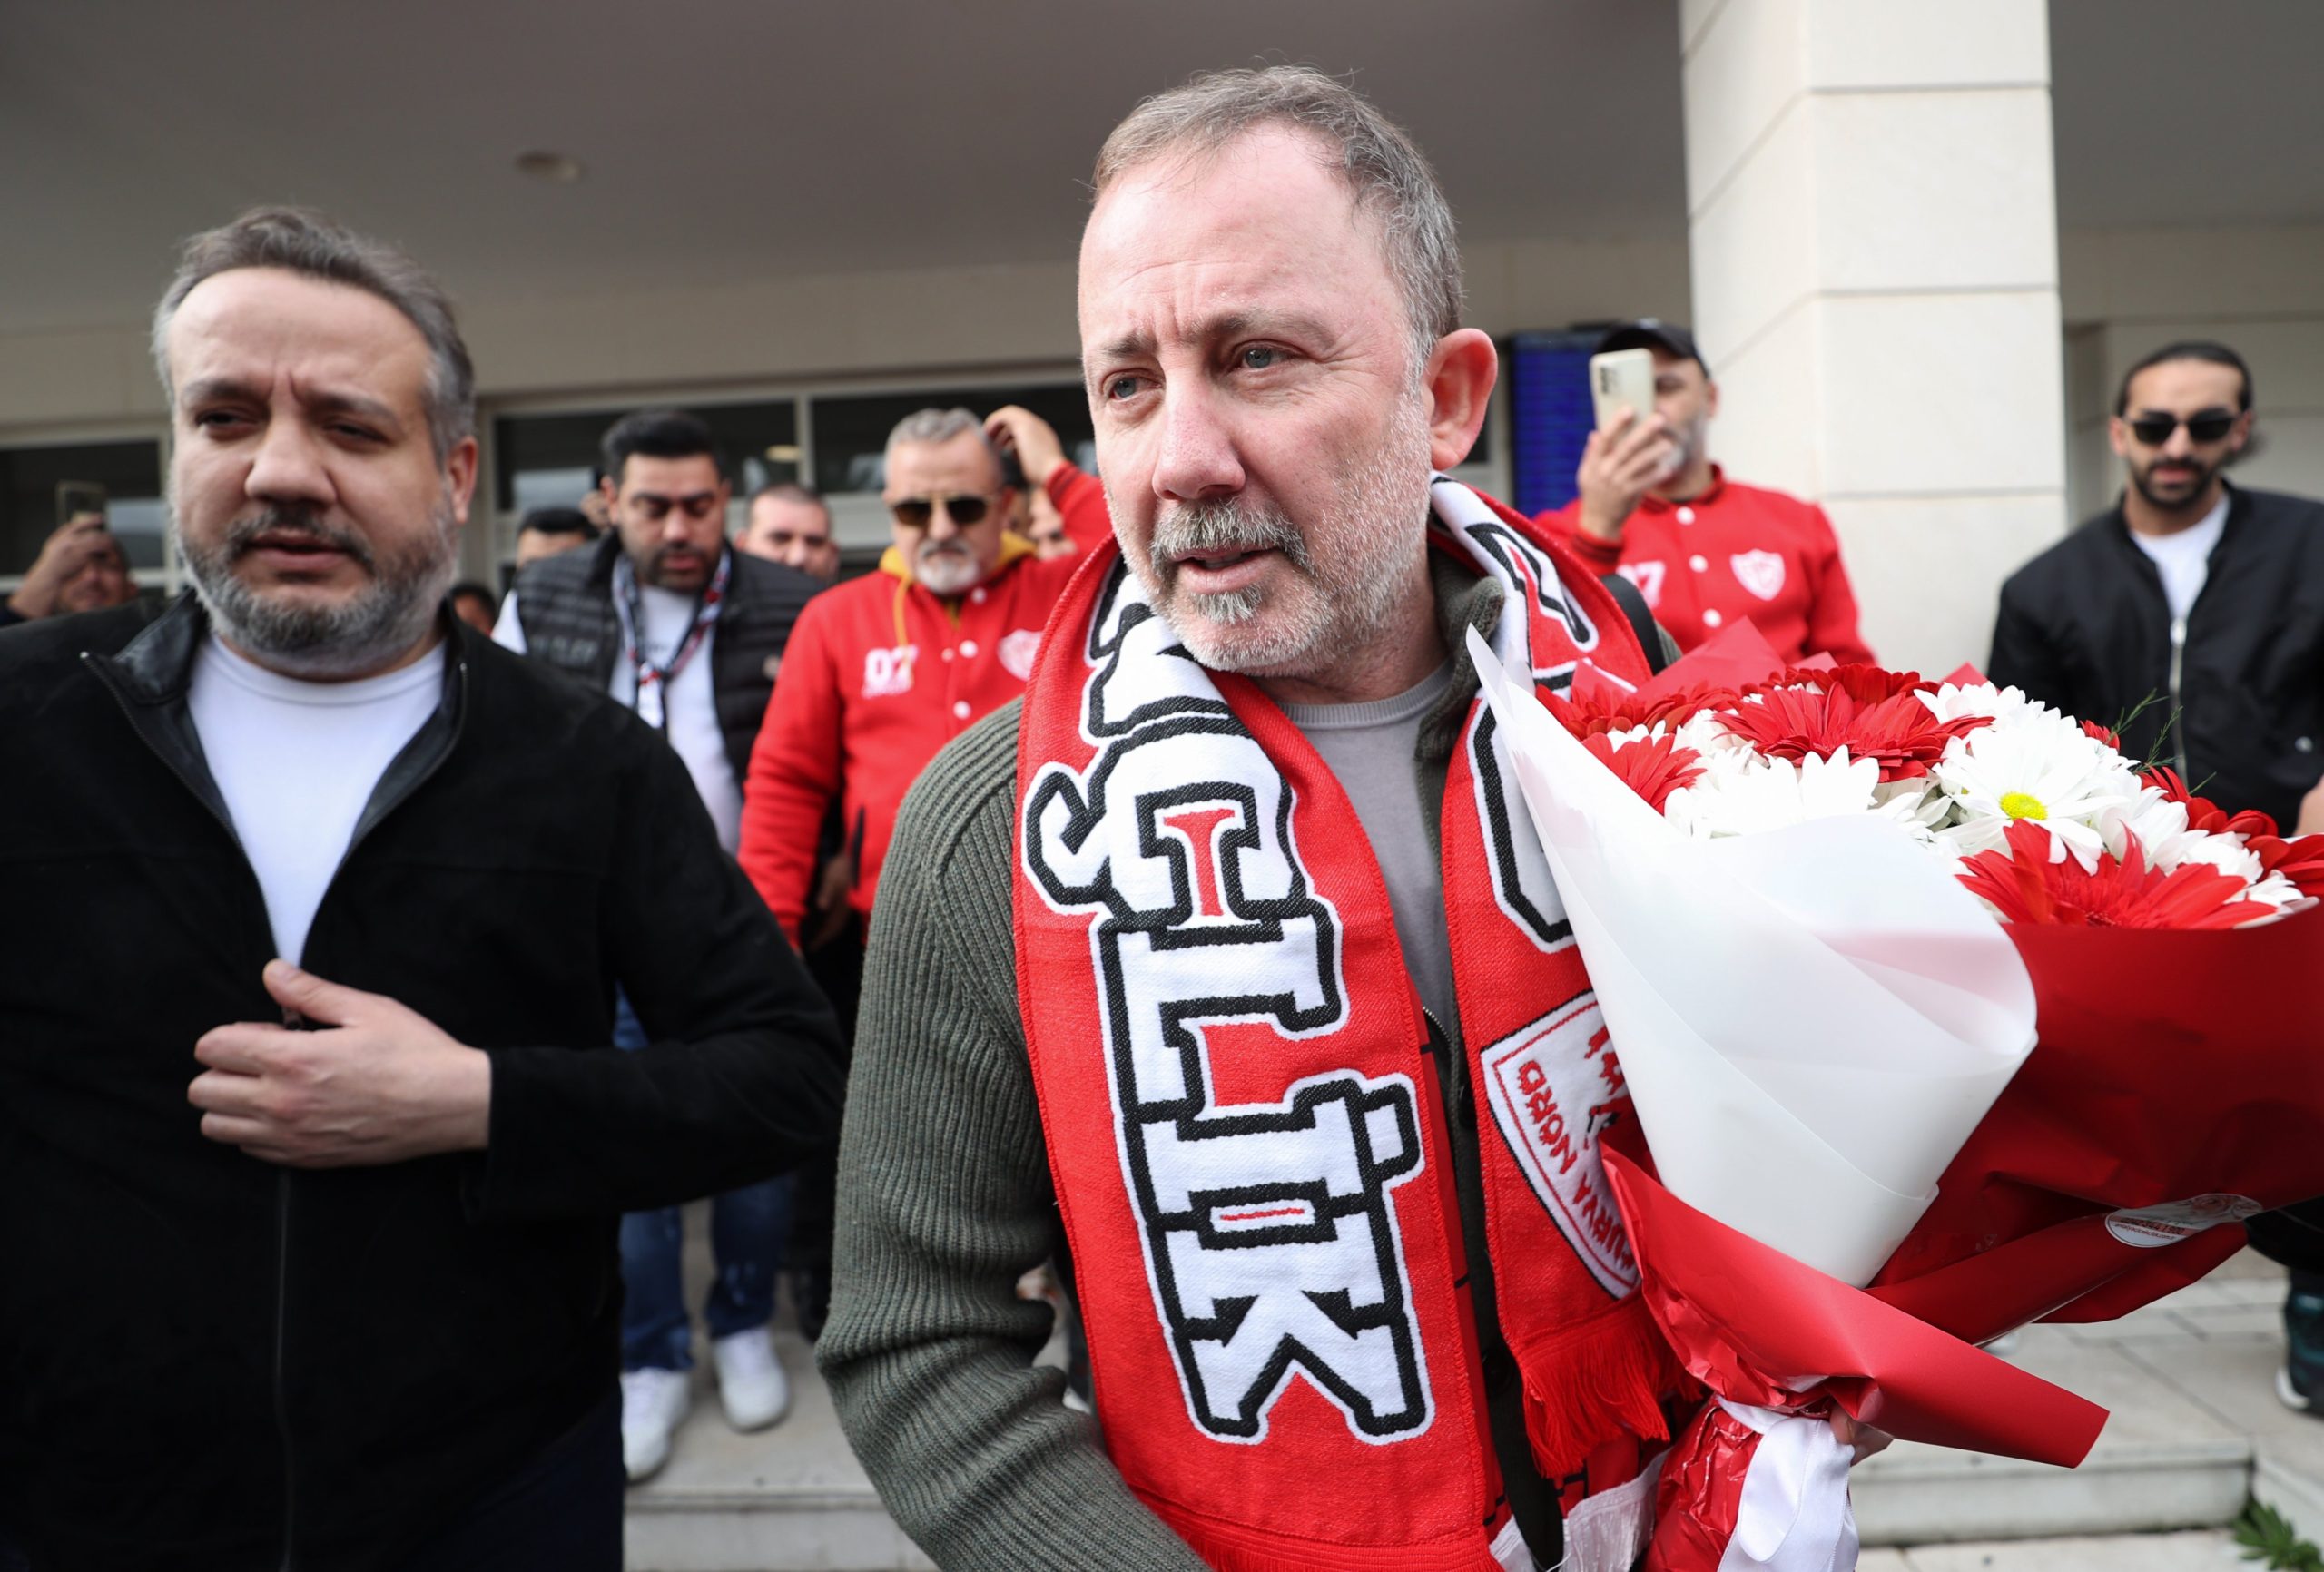 FIFA'nın ceza verdiği 24 takımdan ilk tepki Antalyaspor'dan geldi: Çok önemli bir detay değil!